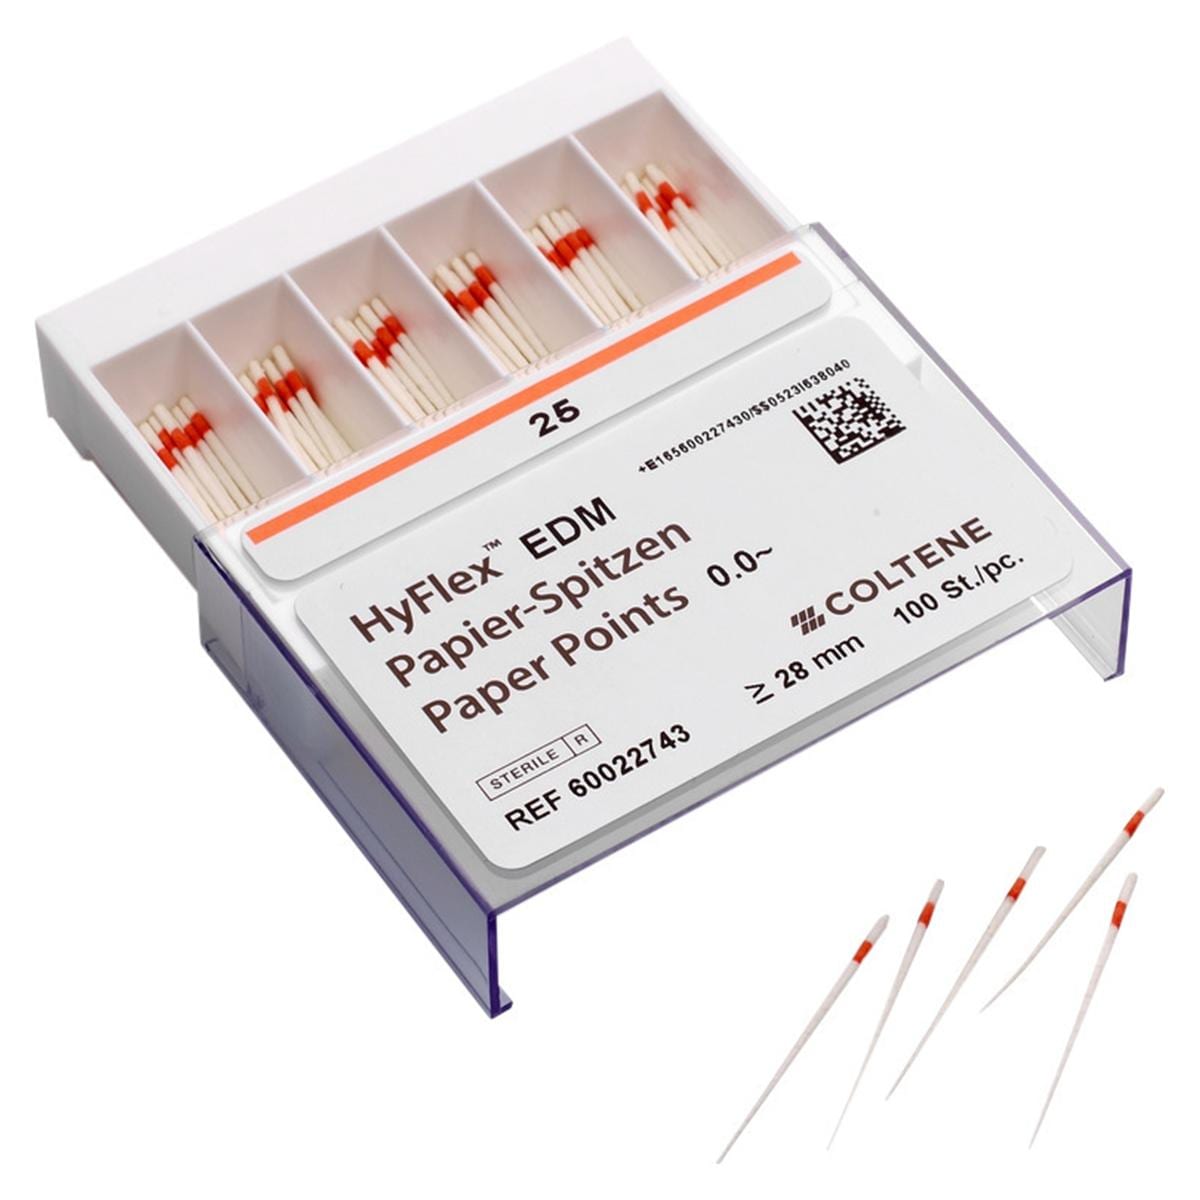 Pointes de papier Hyflex EDM - ISO 040, taper .02, 100 pcs